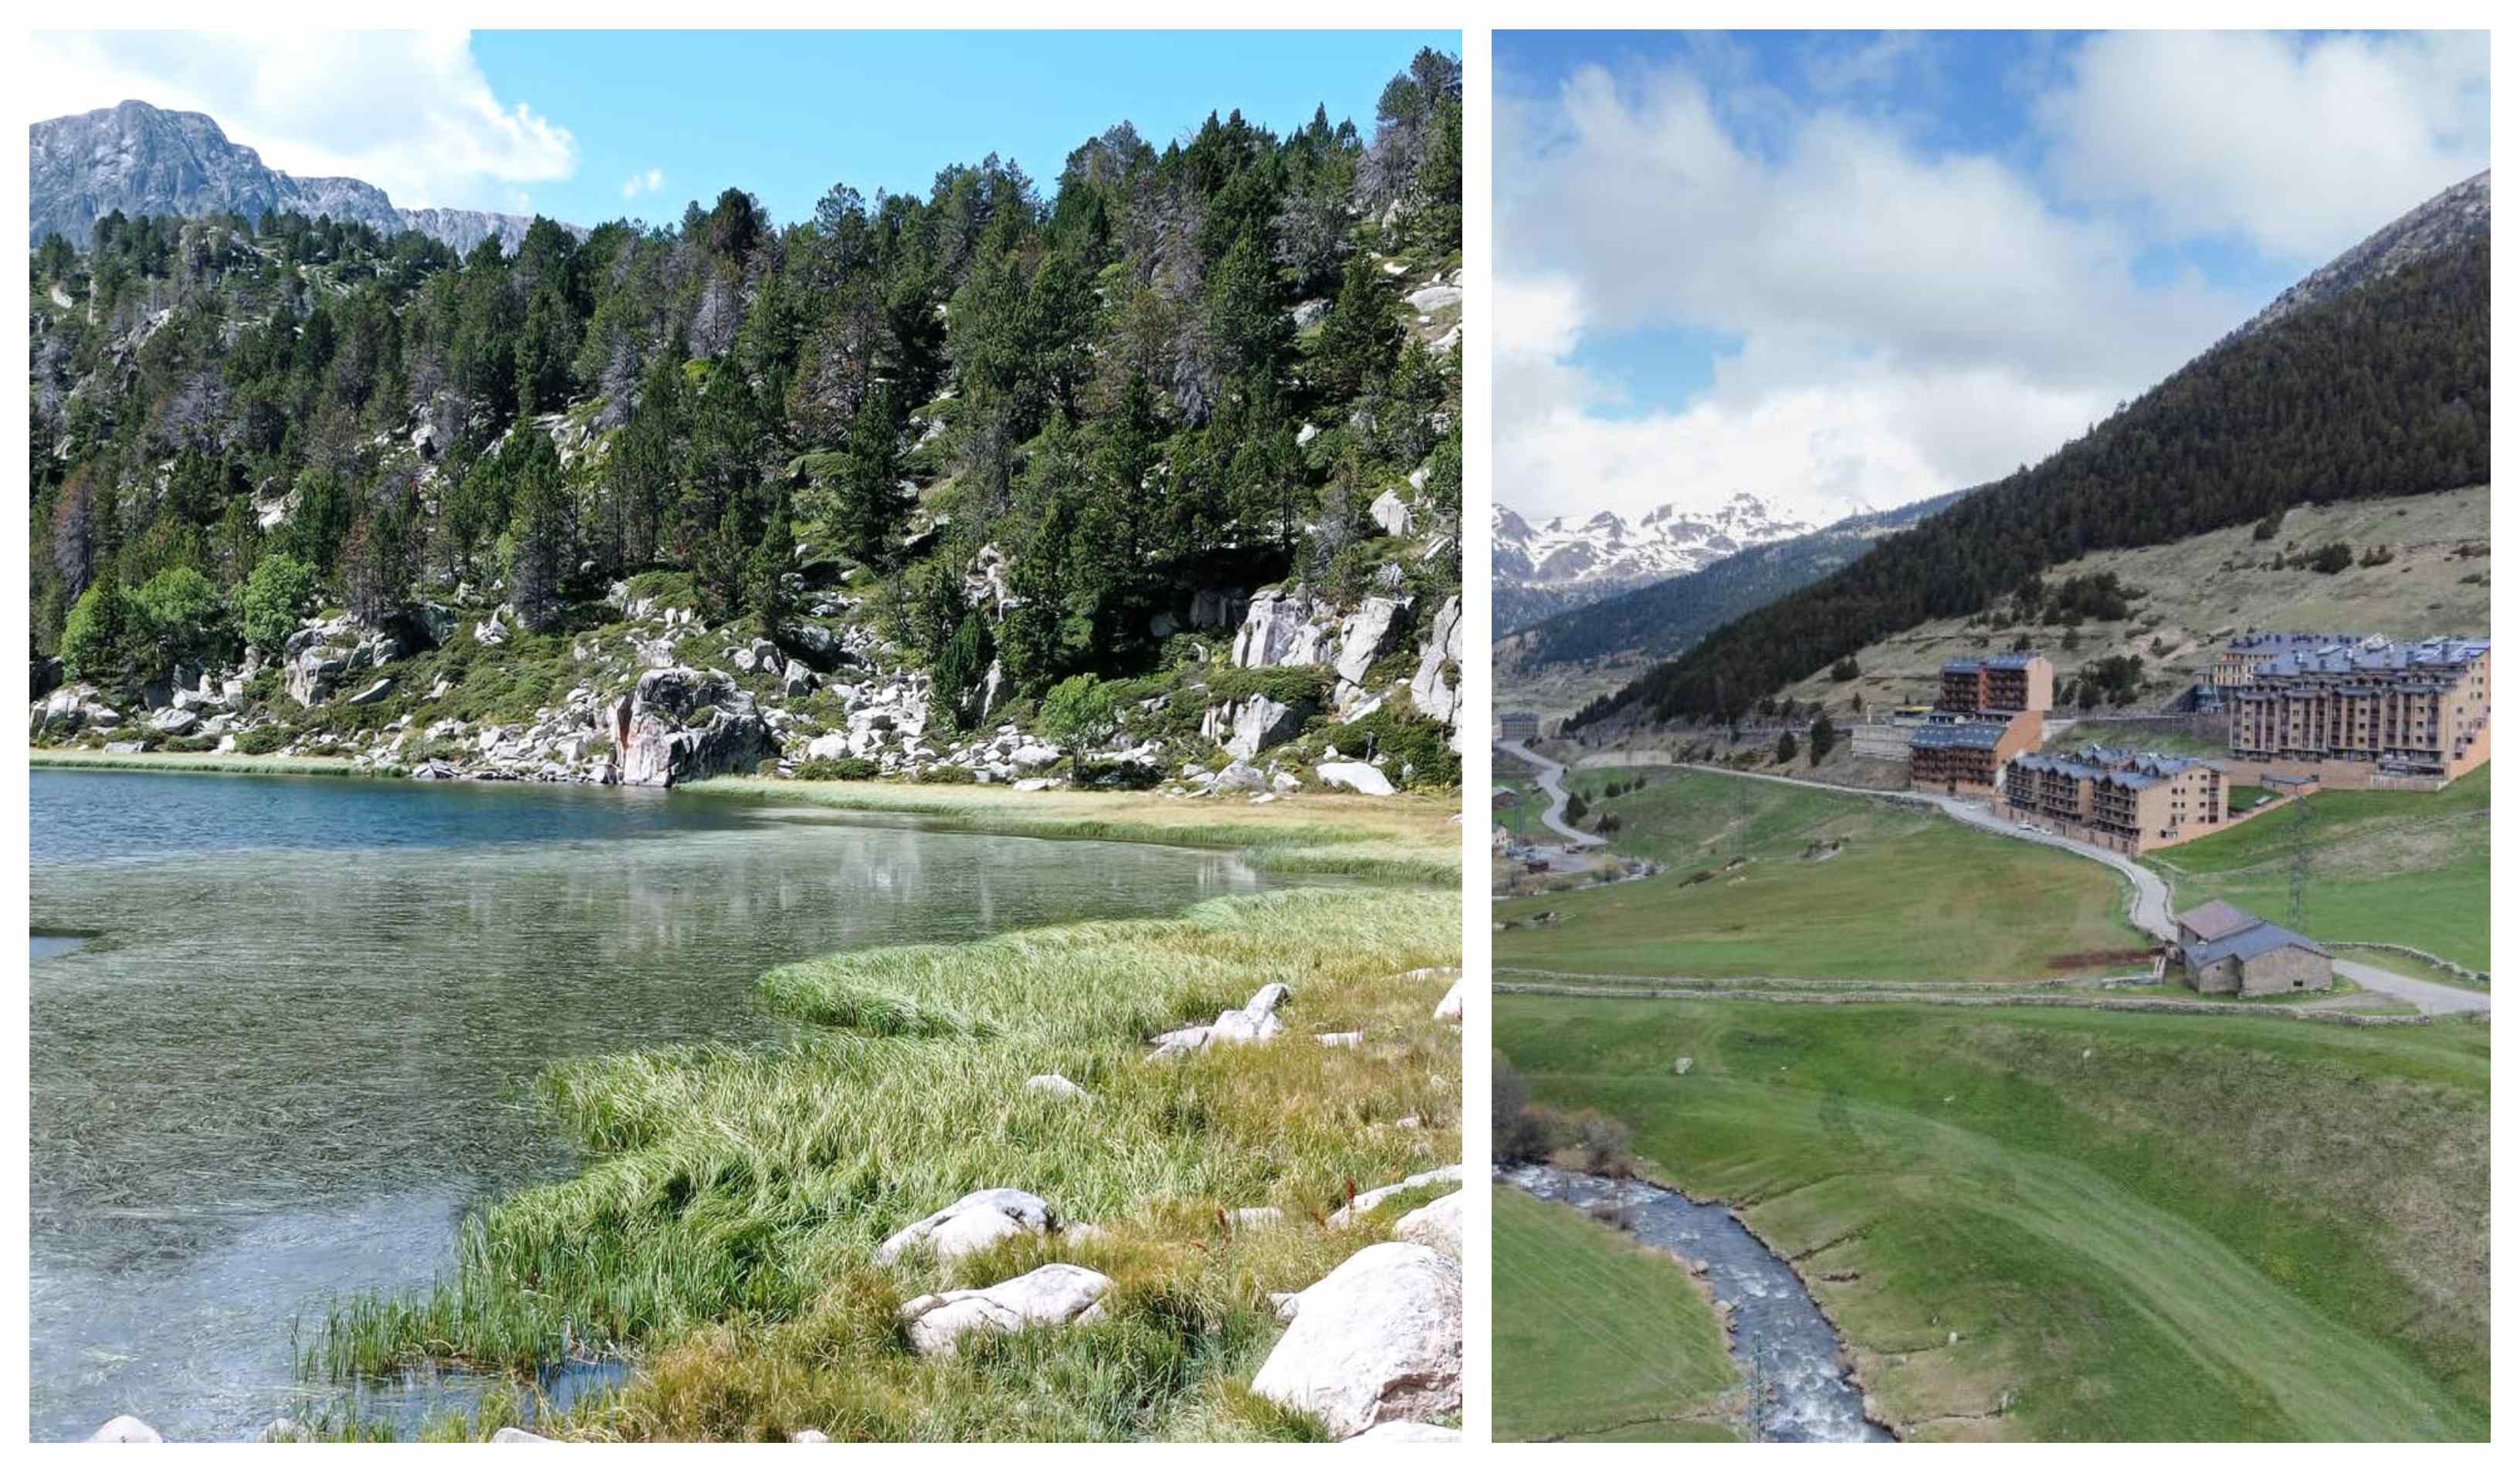 Paisaje y estampa del pueblo Borden d'Envalira en Andorra